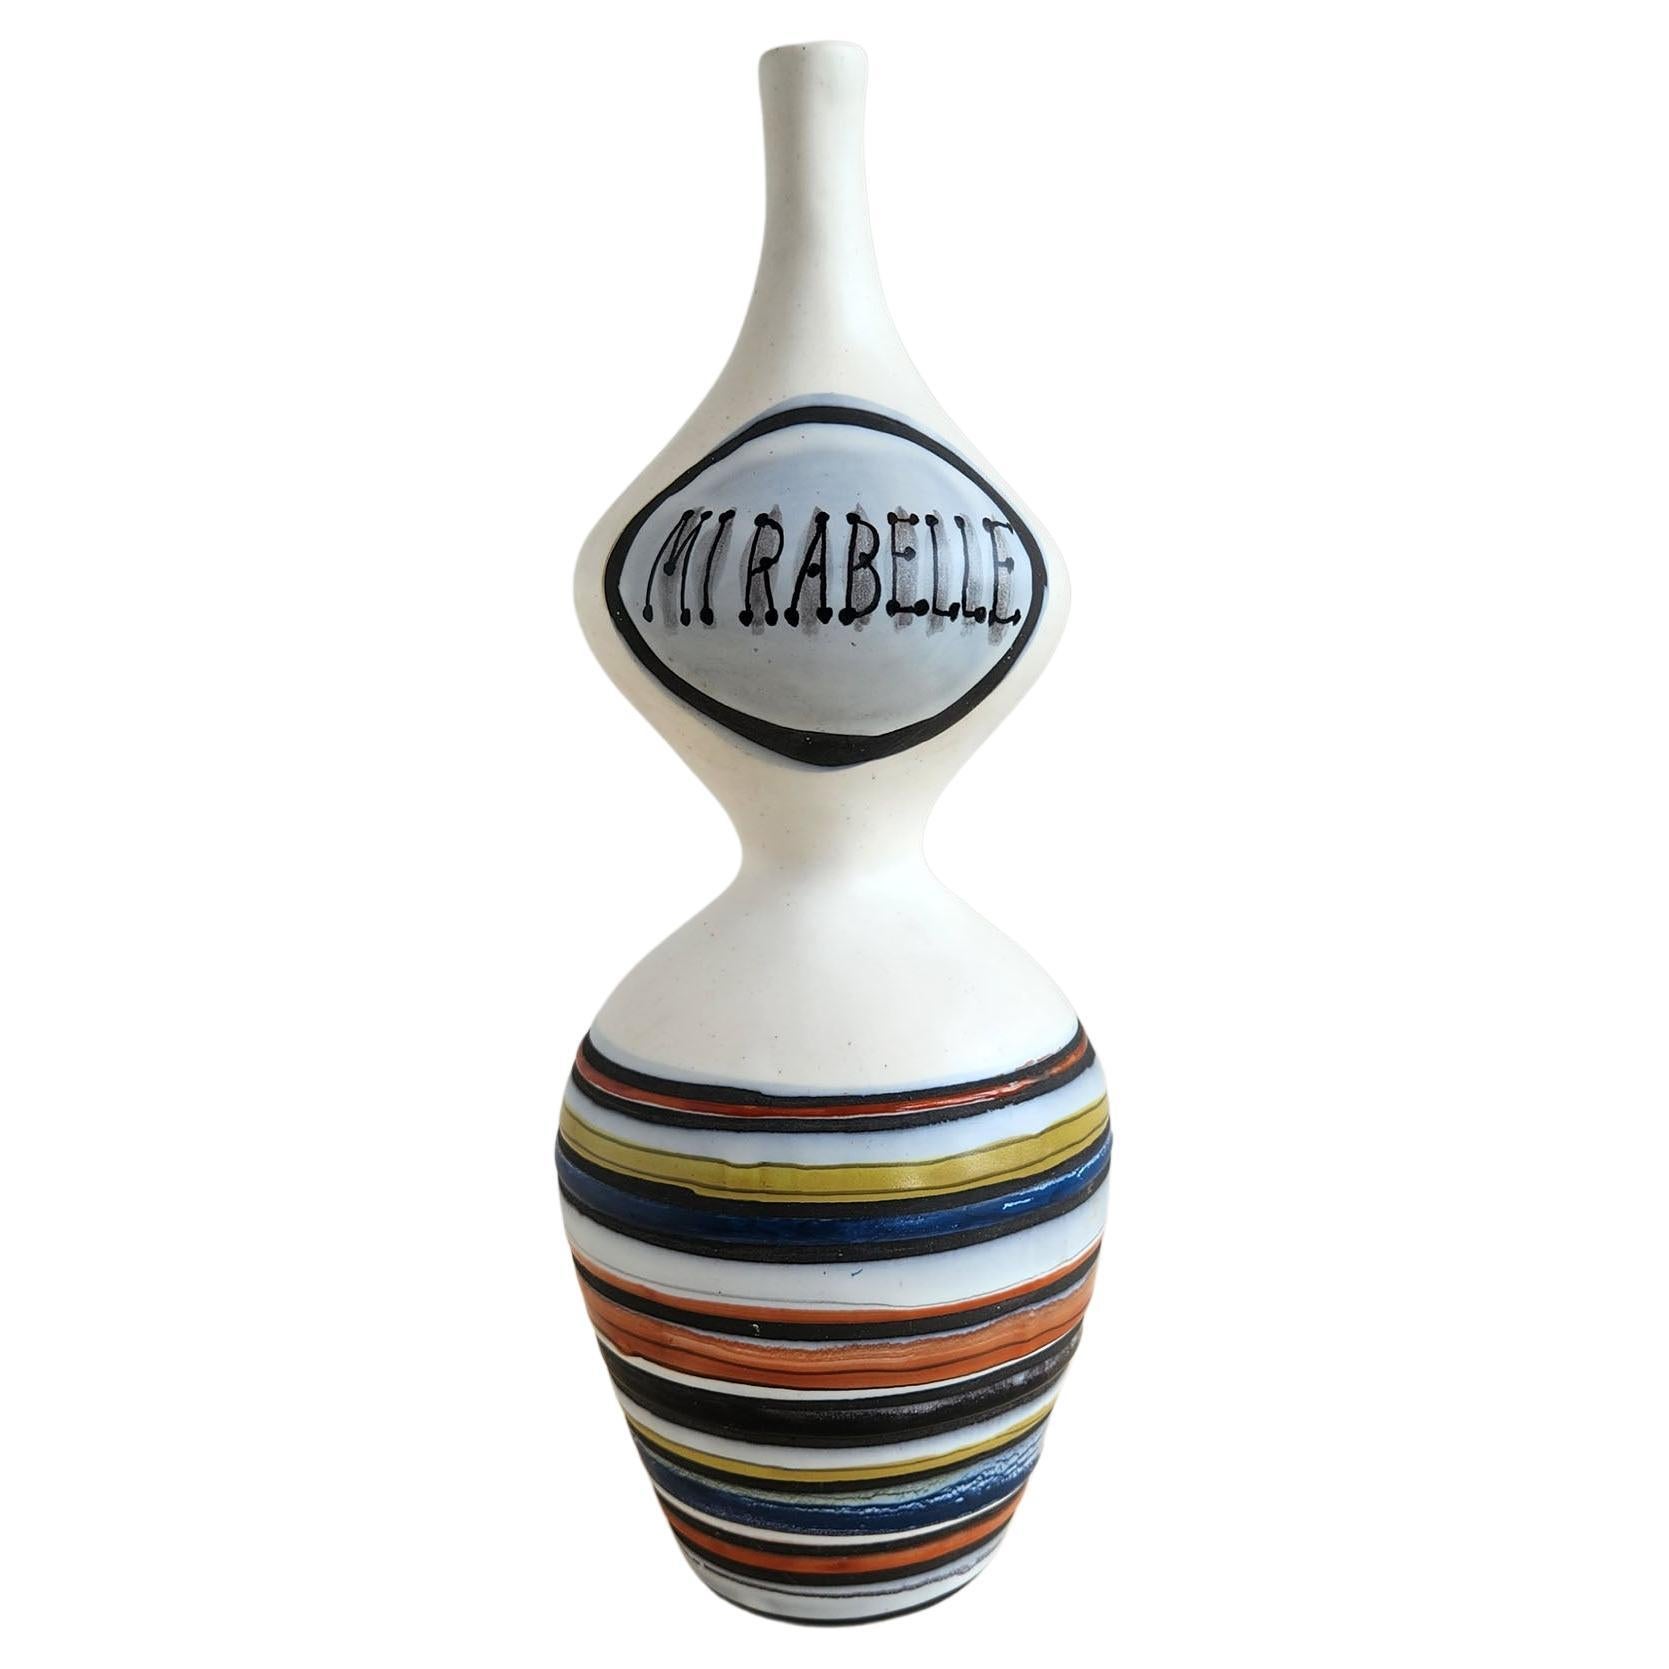 Roger Capron - Vintage Freeform Ceramic Mirabelle Flask 